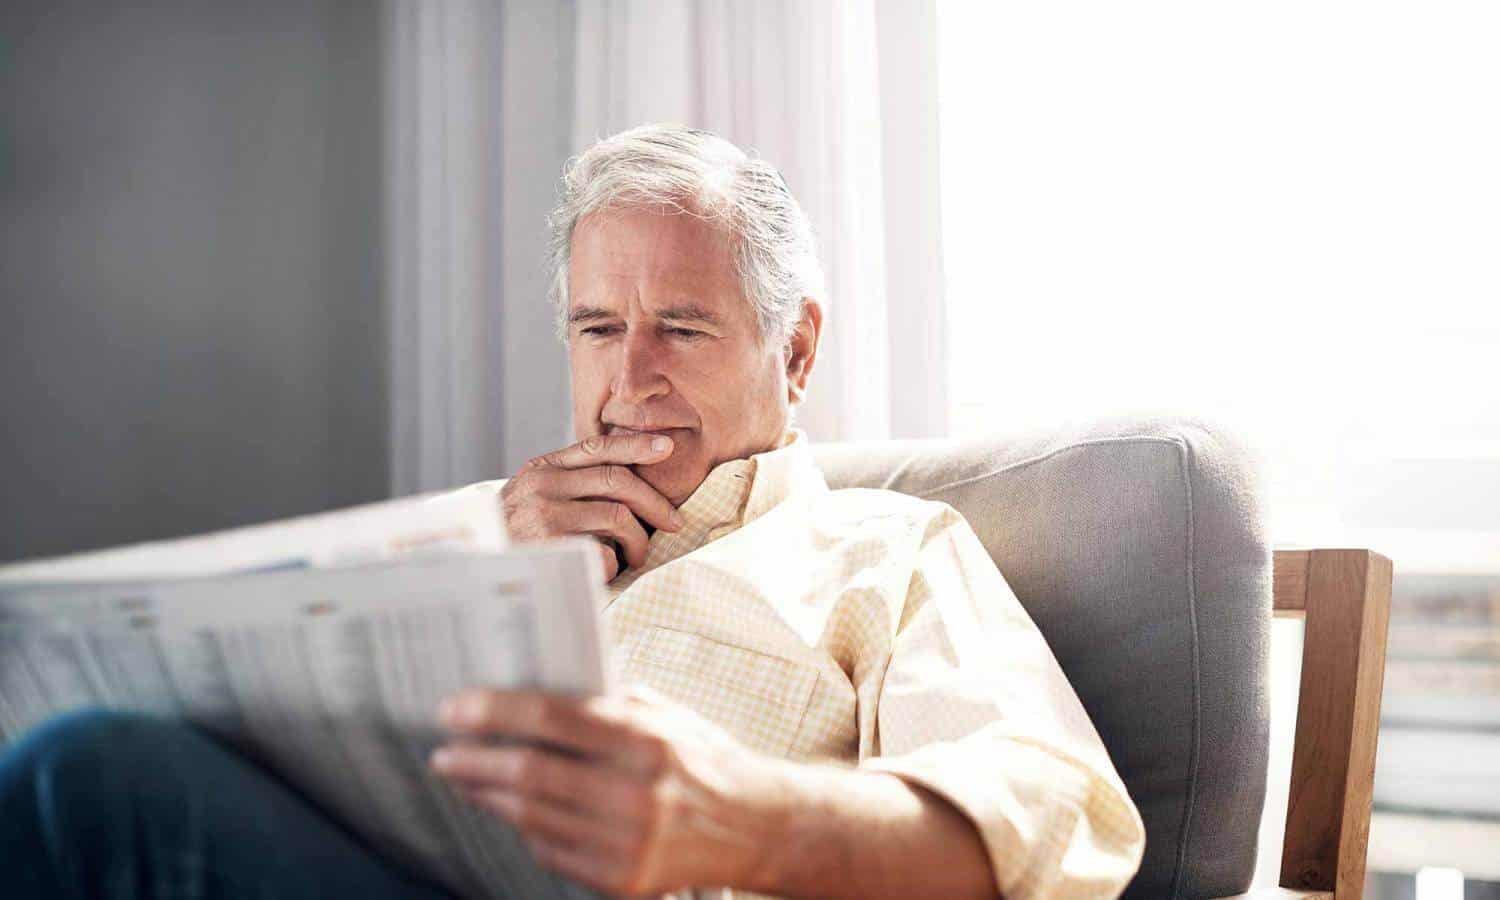 An older man in a yellow dress shirt, reading a newspaper - Stock